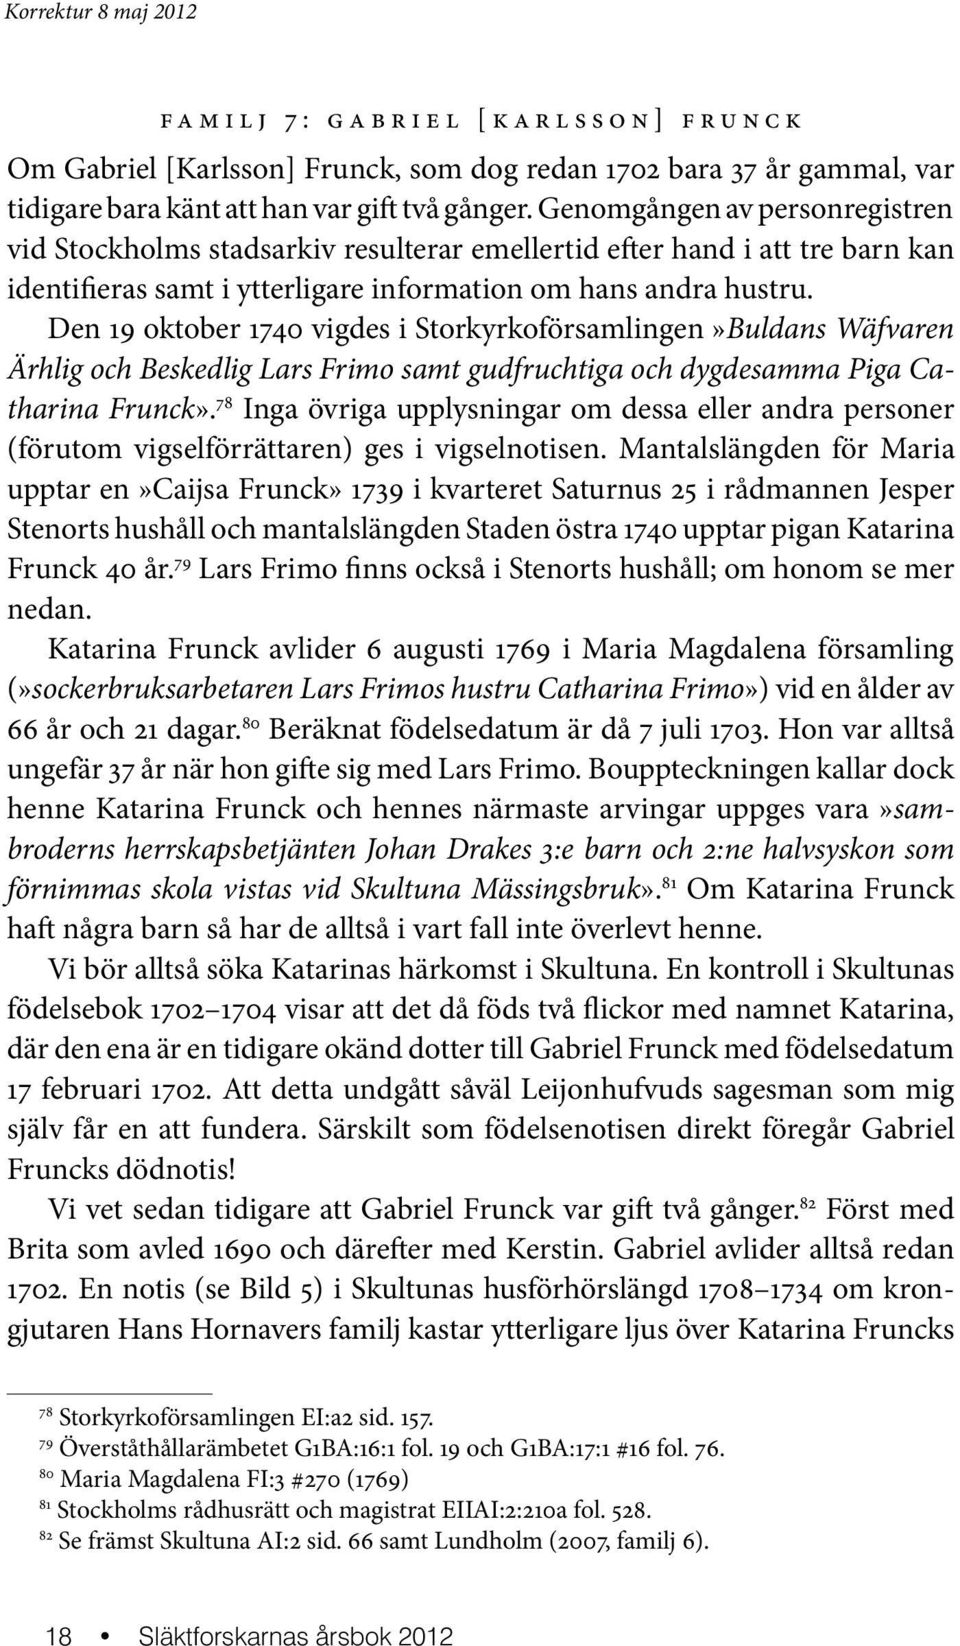 Den 19 oktober 1740 vigdes i Storkyrkoförsamlingen»Buldans Wäf varen Ärhlig och Beskedlig Lars Frimo samt gudfruchtiga och dygde samma Piga Catharina Frunck».